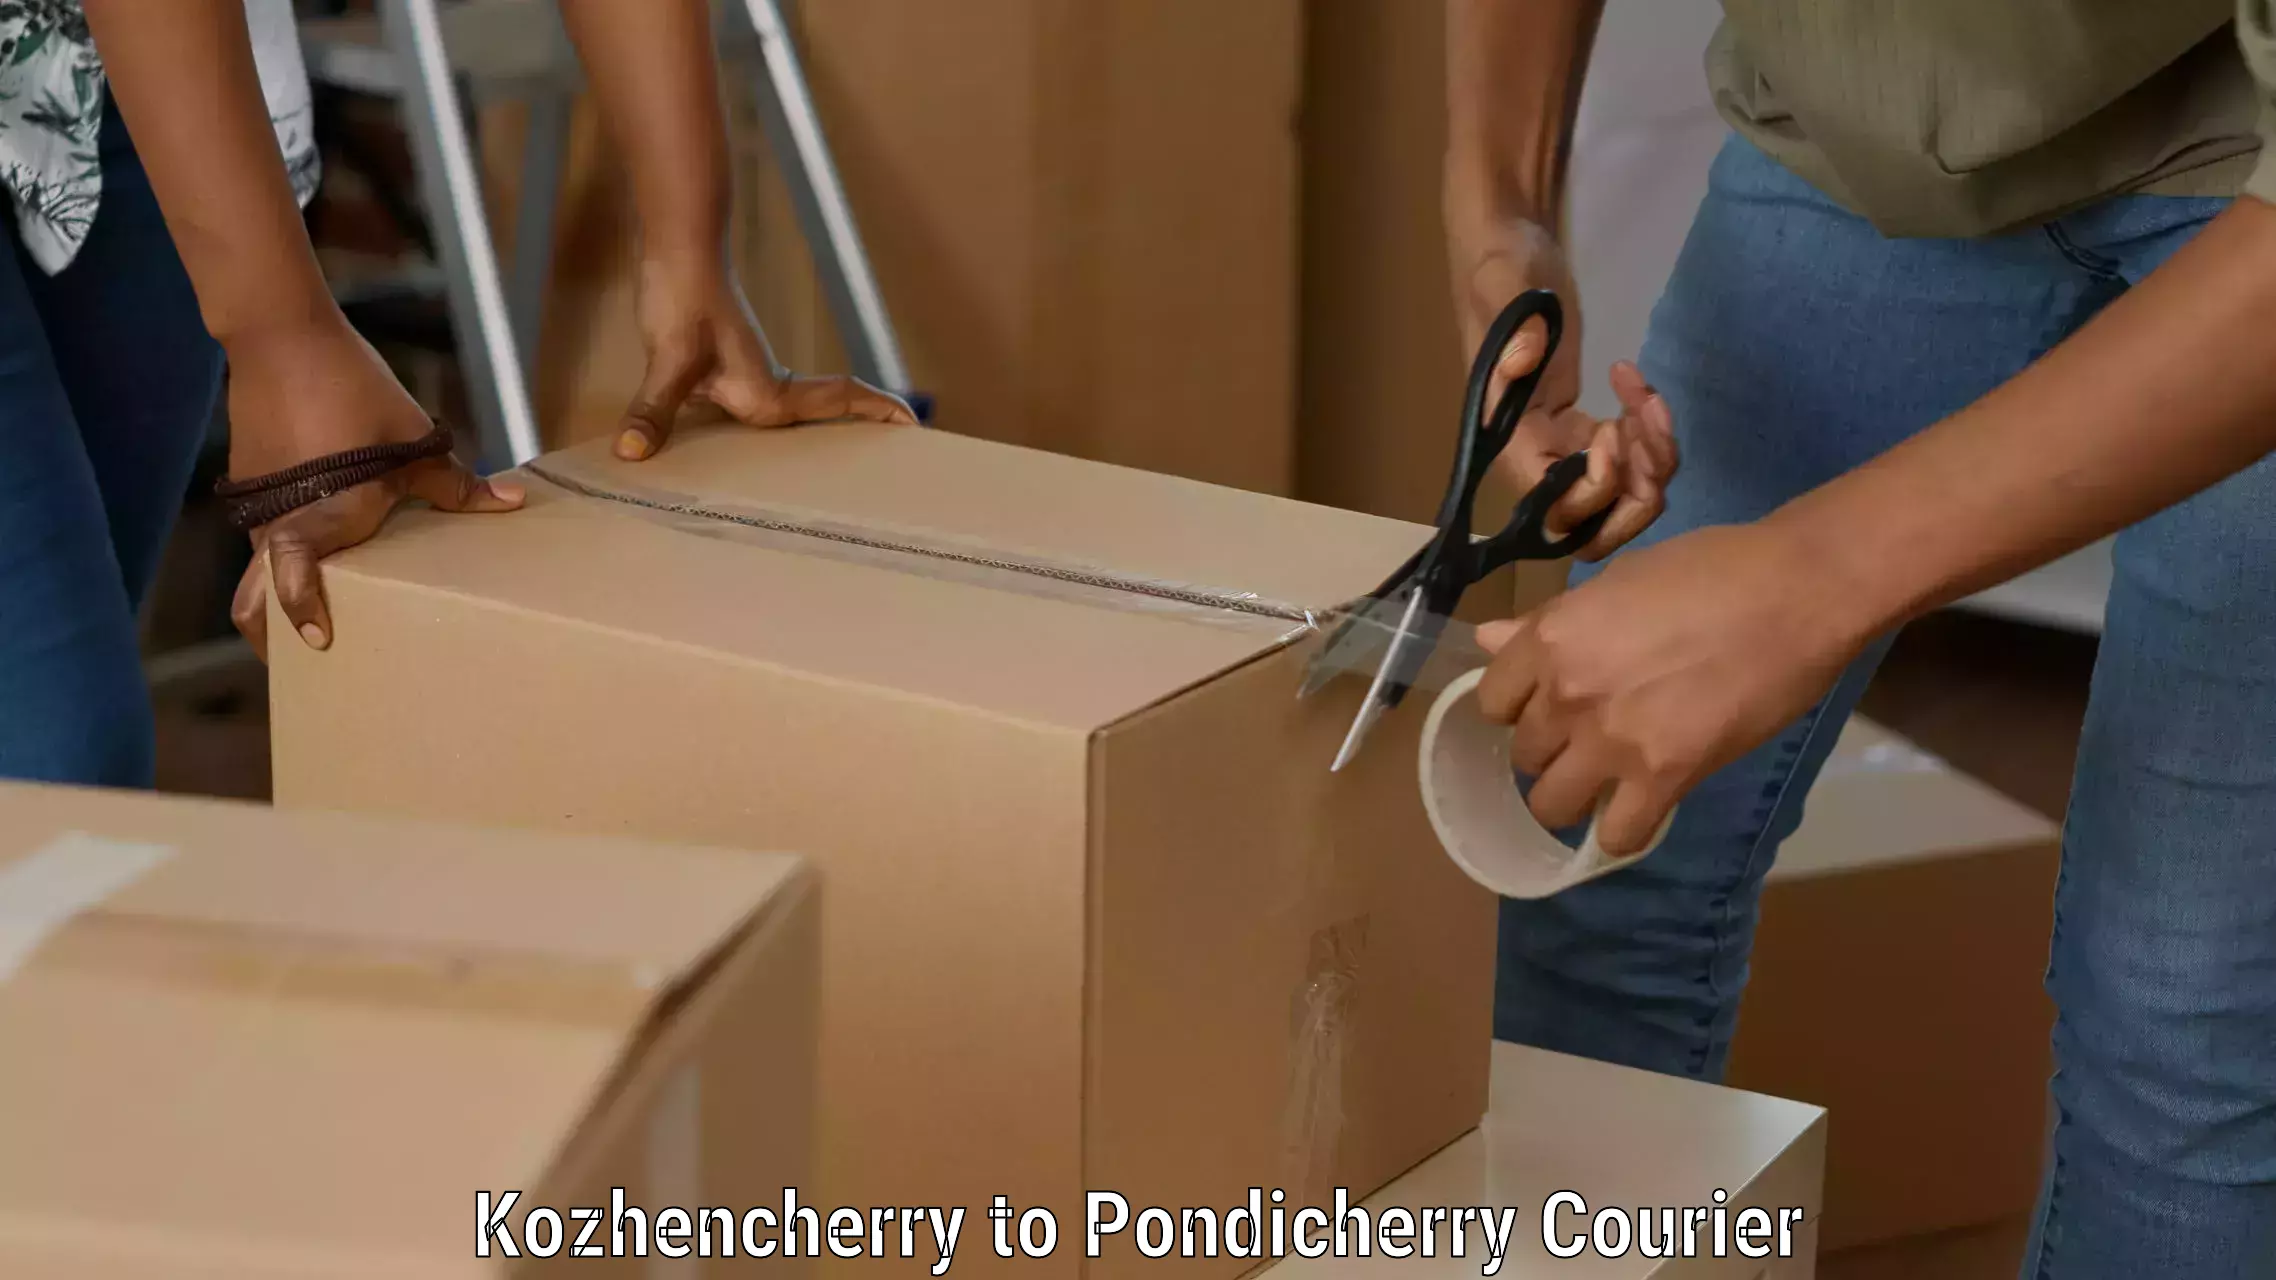 Flexible parcel services Kozhencherry to Pondicherry University